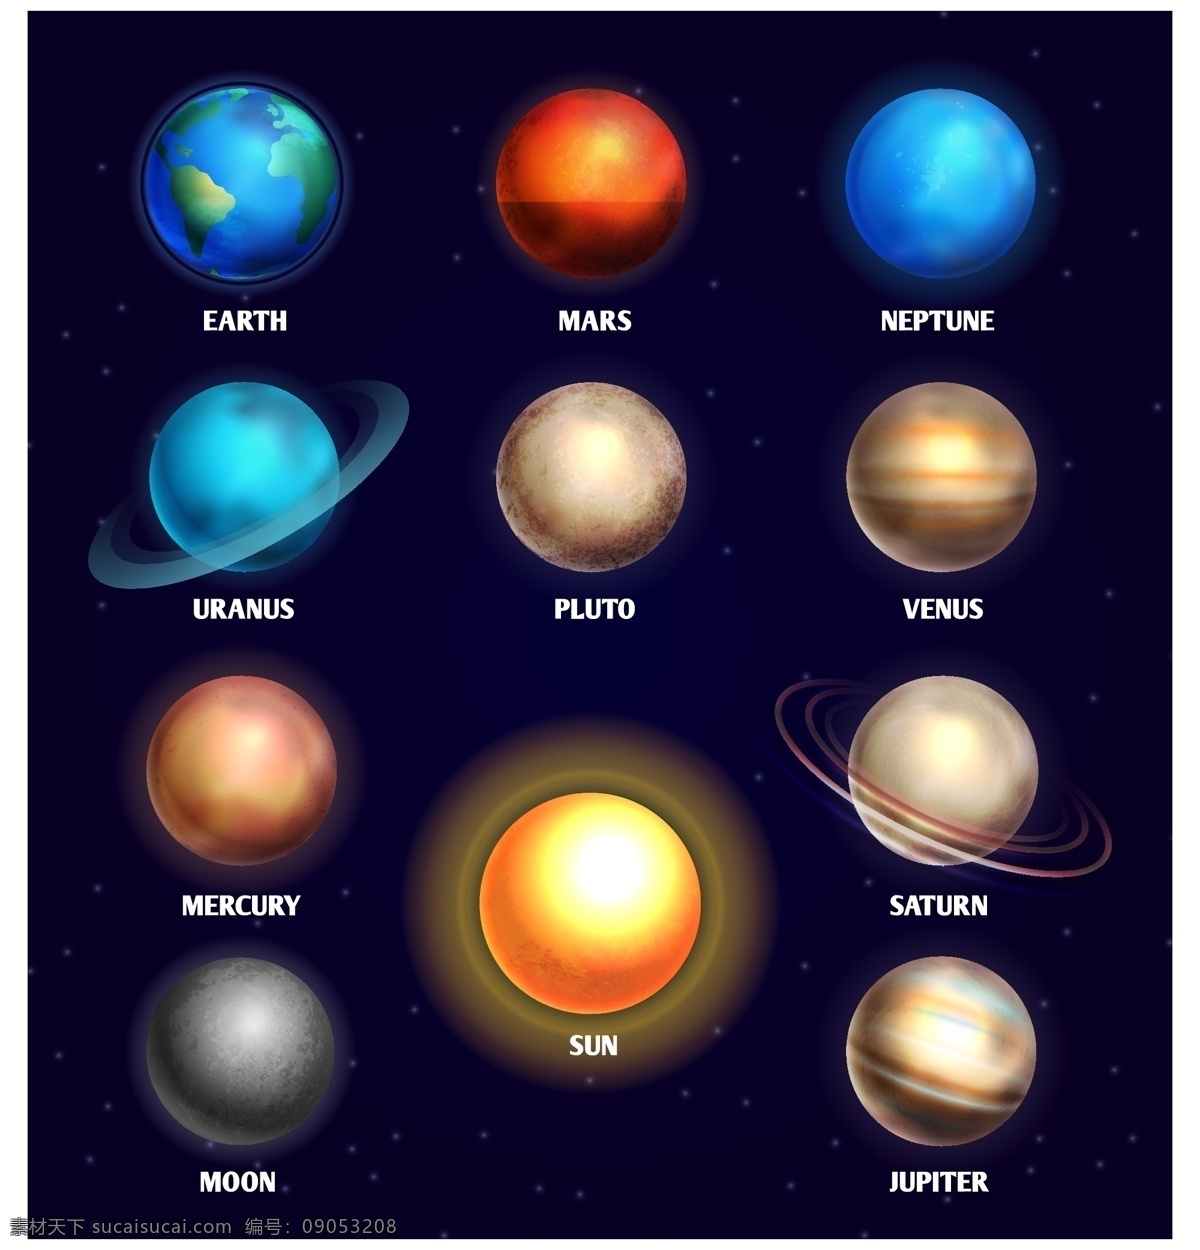 八大 行星 主题 创意 矢量图 矢量素材 文 地理 太空 星球 地球 太阳 太阳系 星空 宇宙 水星 金星 火星 木星 土星 天王星 海王星 冥王星 彗星